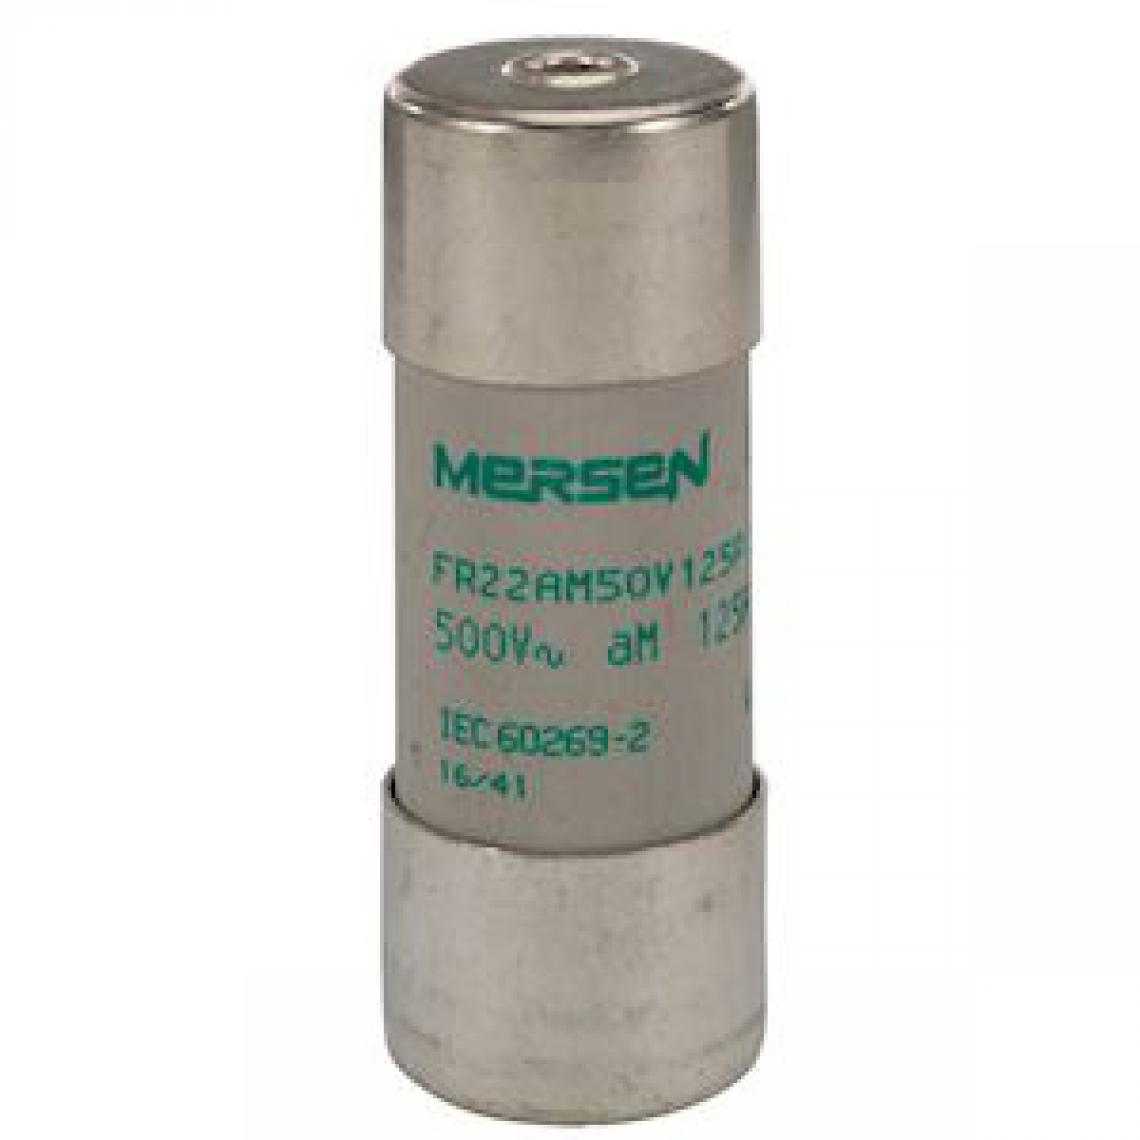 Mersen - fusible cartouche - 22 x 58 - gg - 100a - sans indicateur - 500v - mersen e218205 - Fusibles